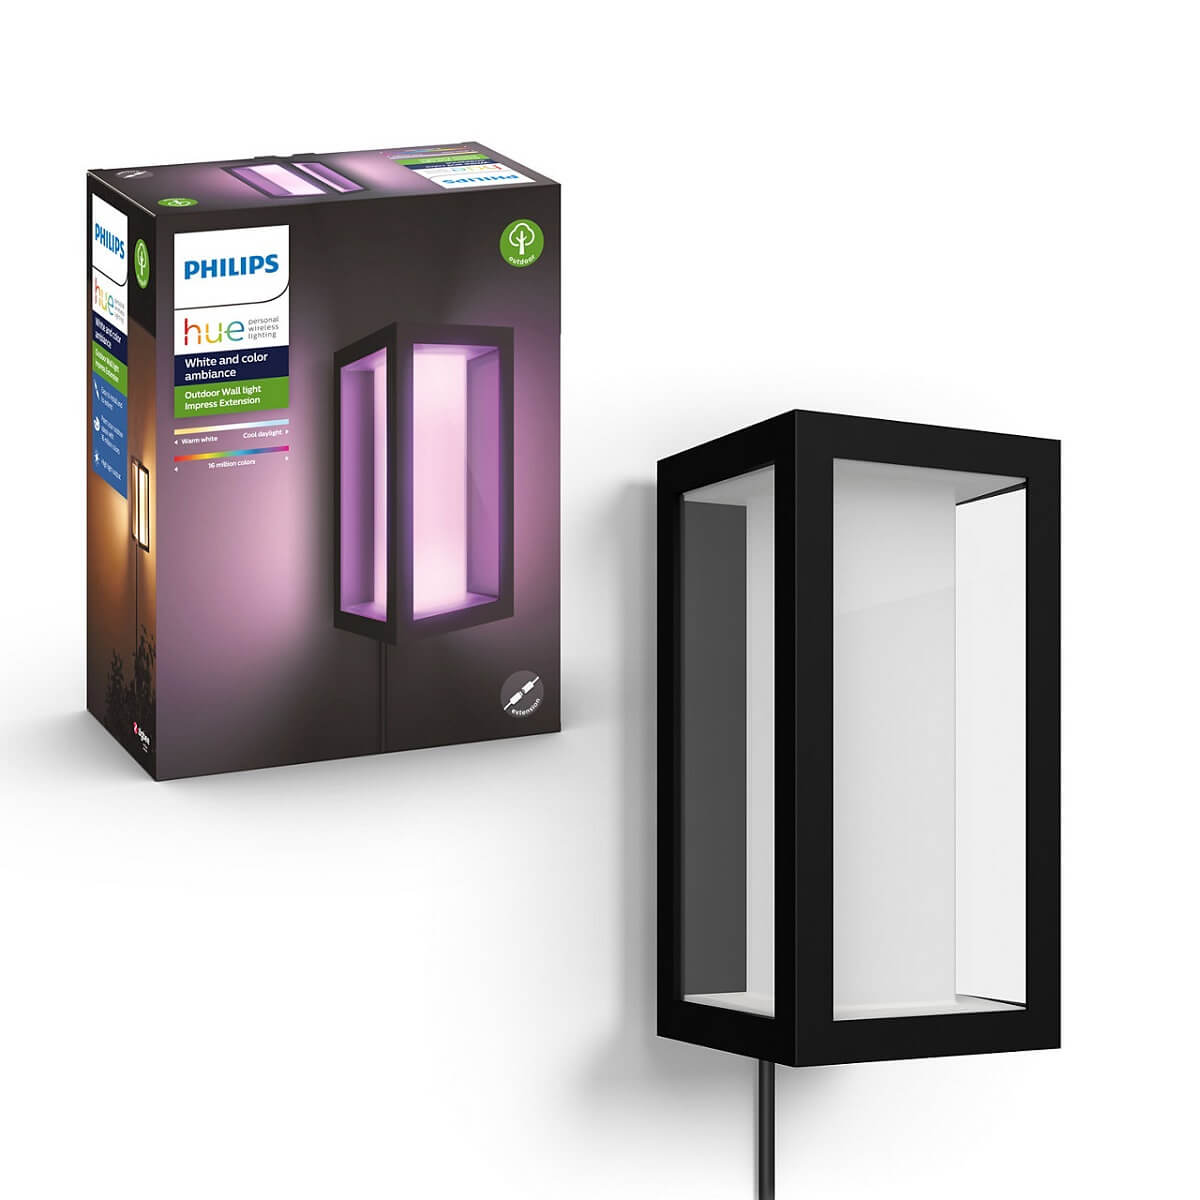 Philips Hue Outdoor your-smarthome | Smart Aussenbereich Onlineshop | Home | HIER Dein Leuchte